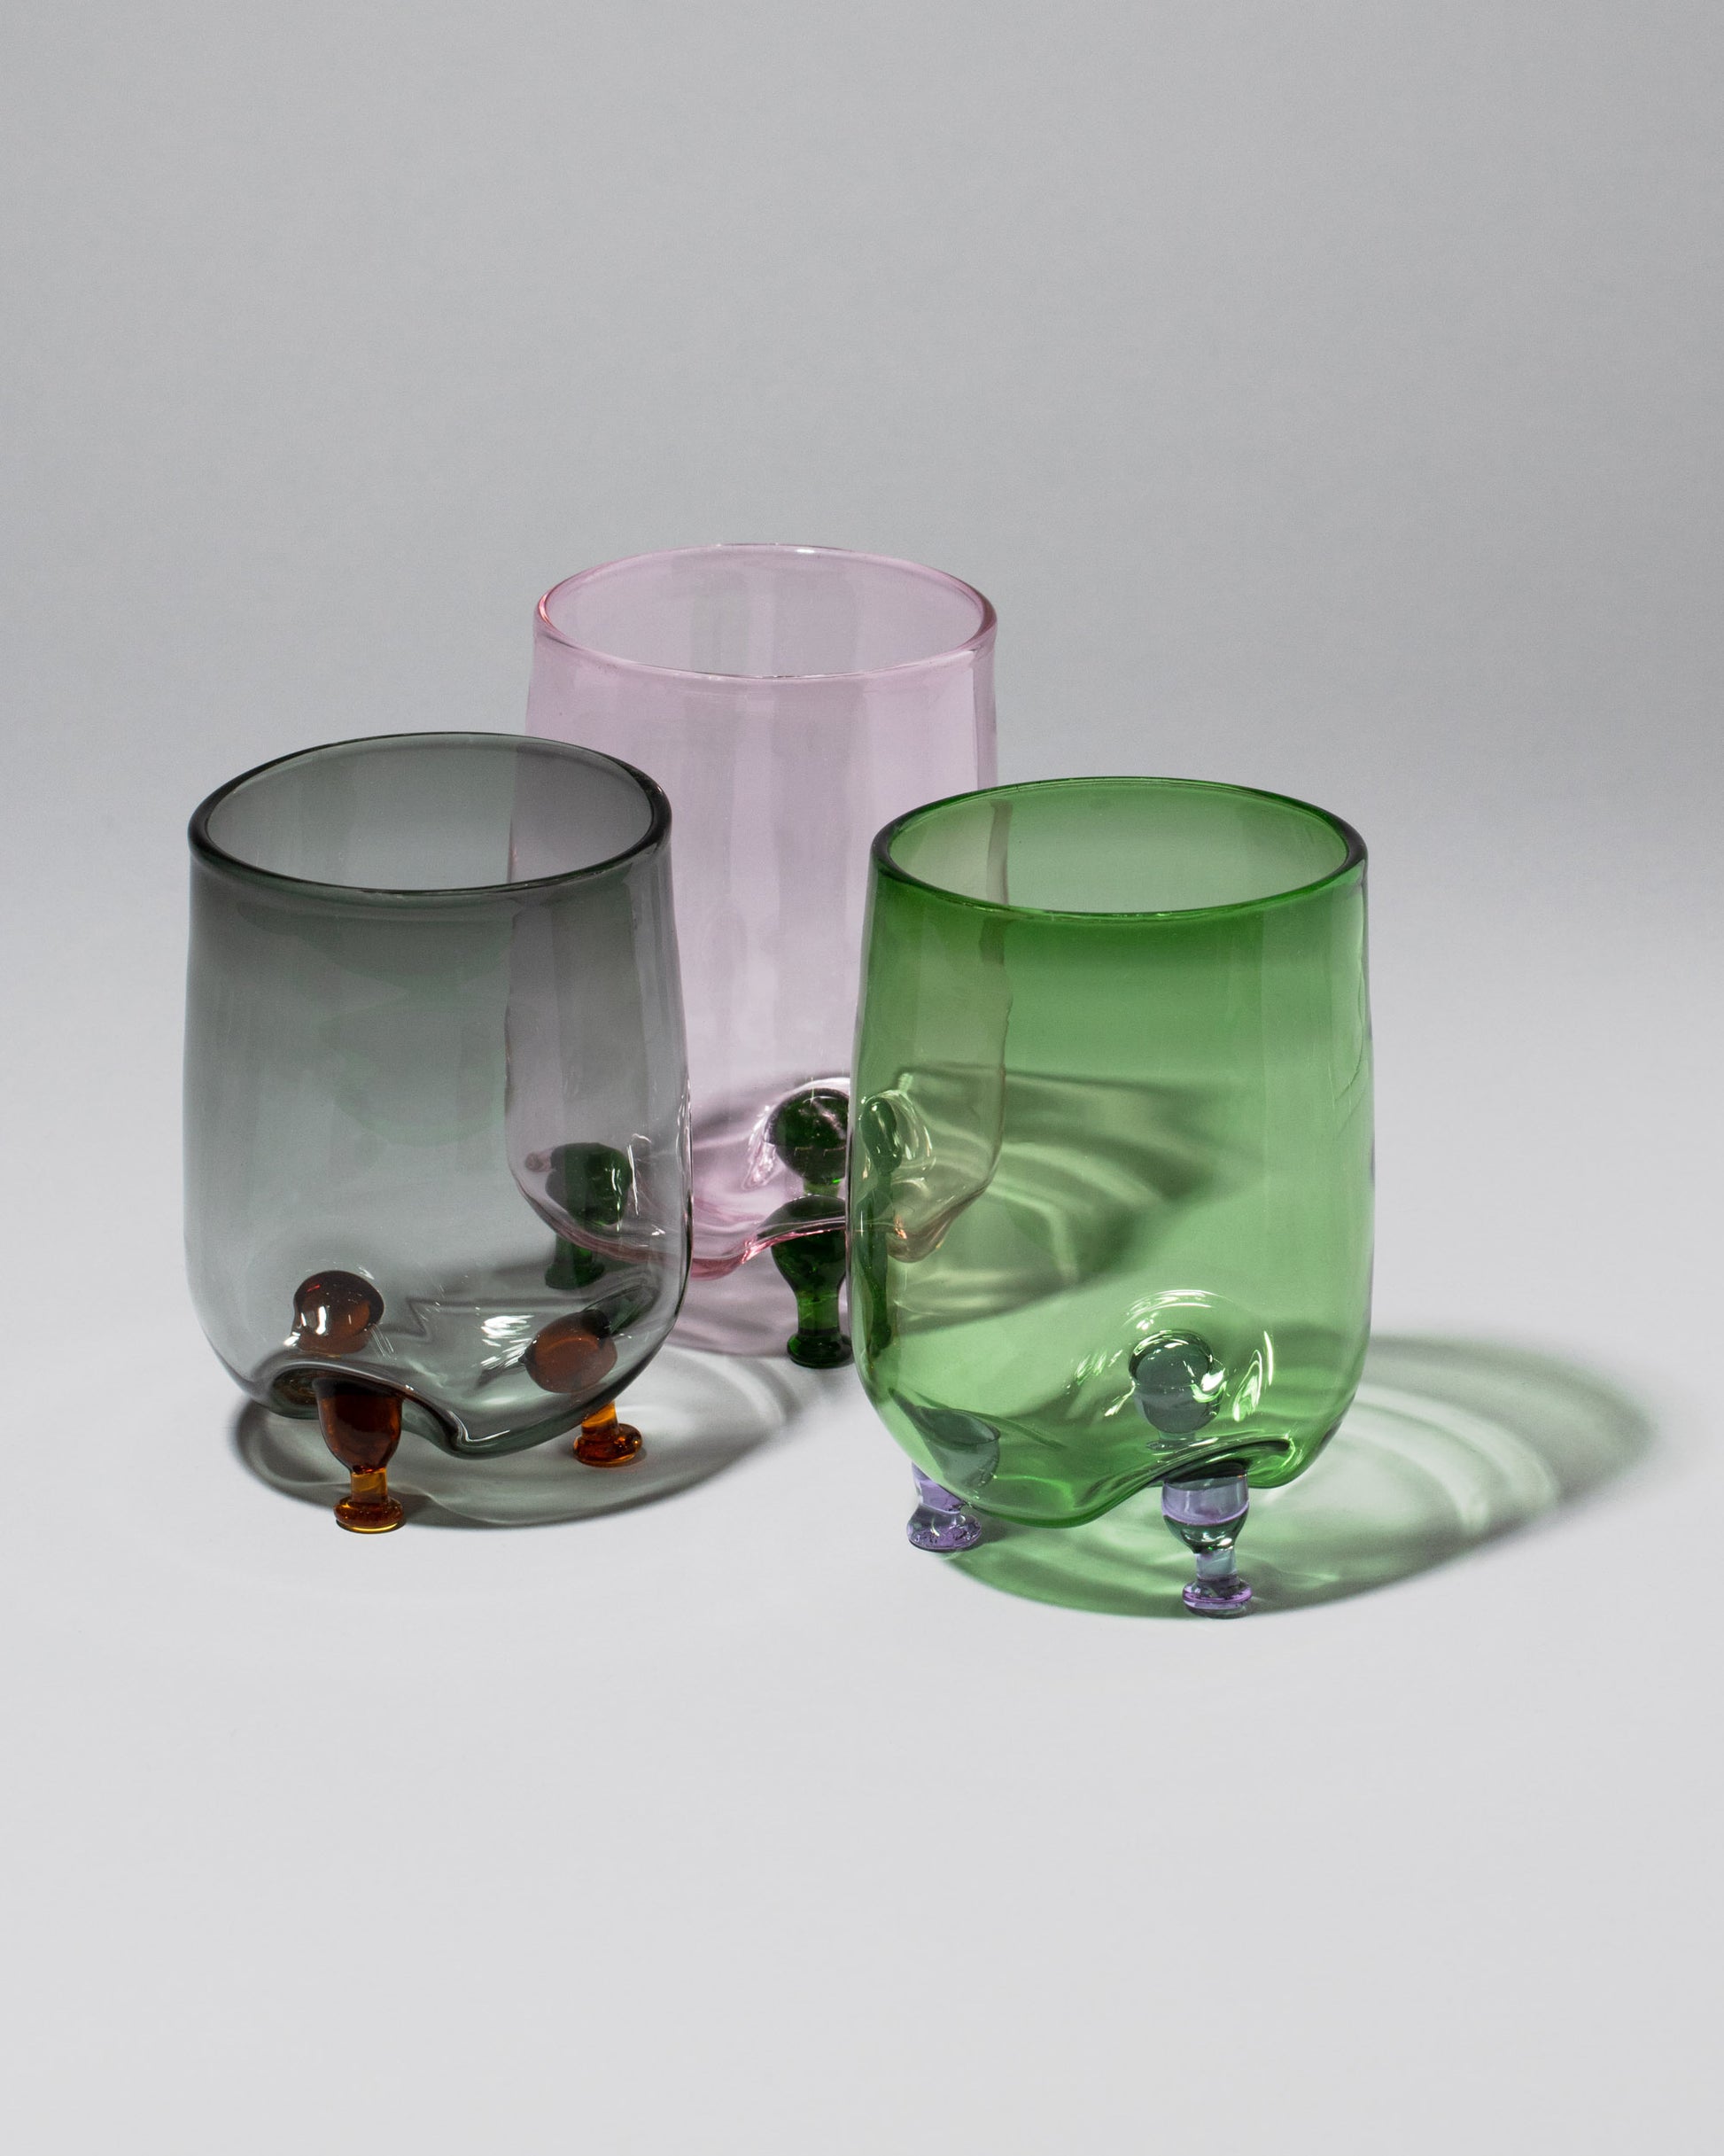 Zafferano Bilia Cappuccino Cup & Saucer, Borosilicate Glass